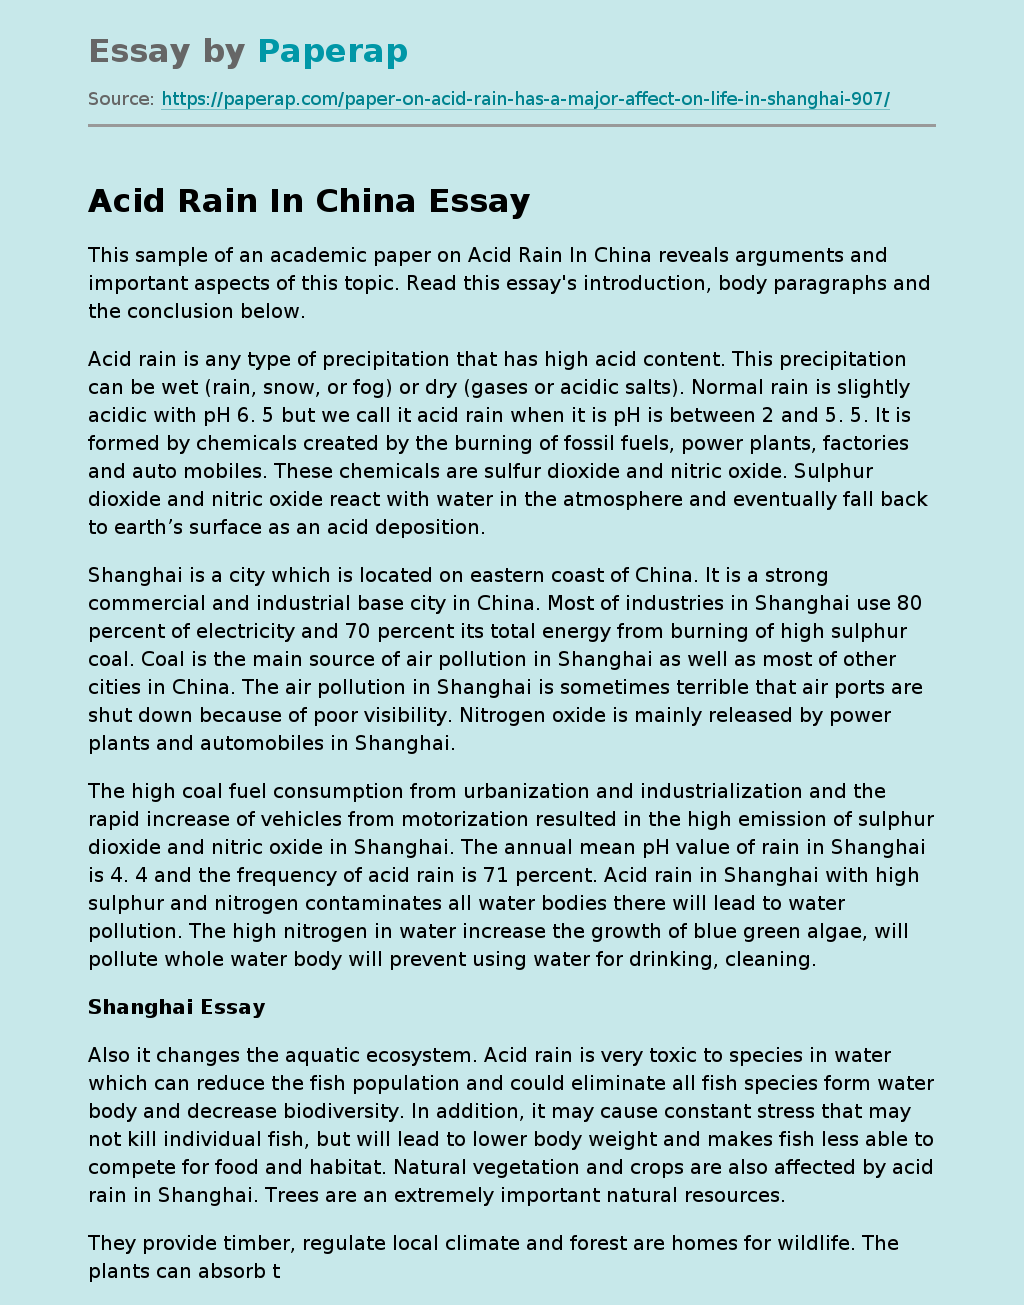 Scientific Paper on Acid Rain in China